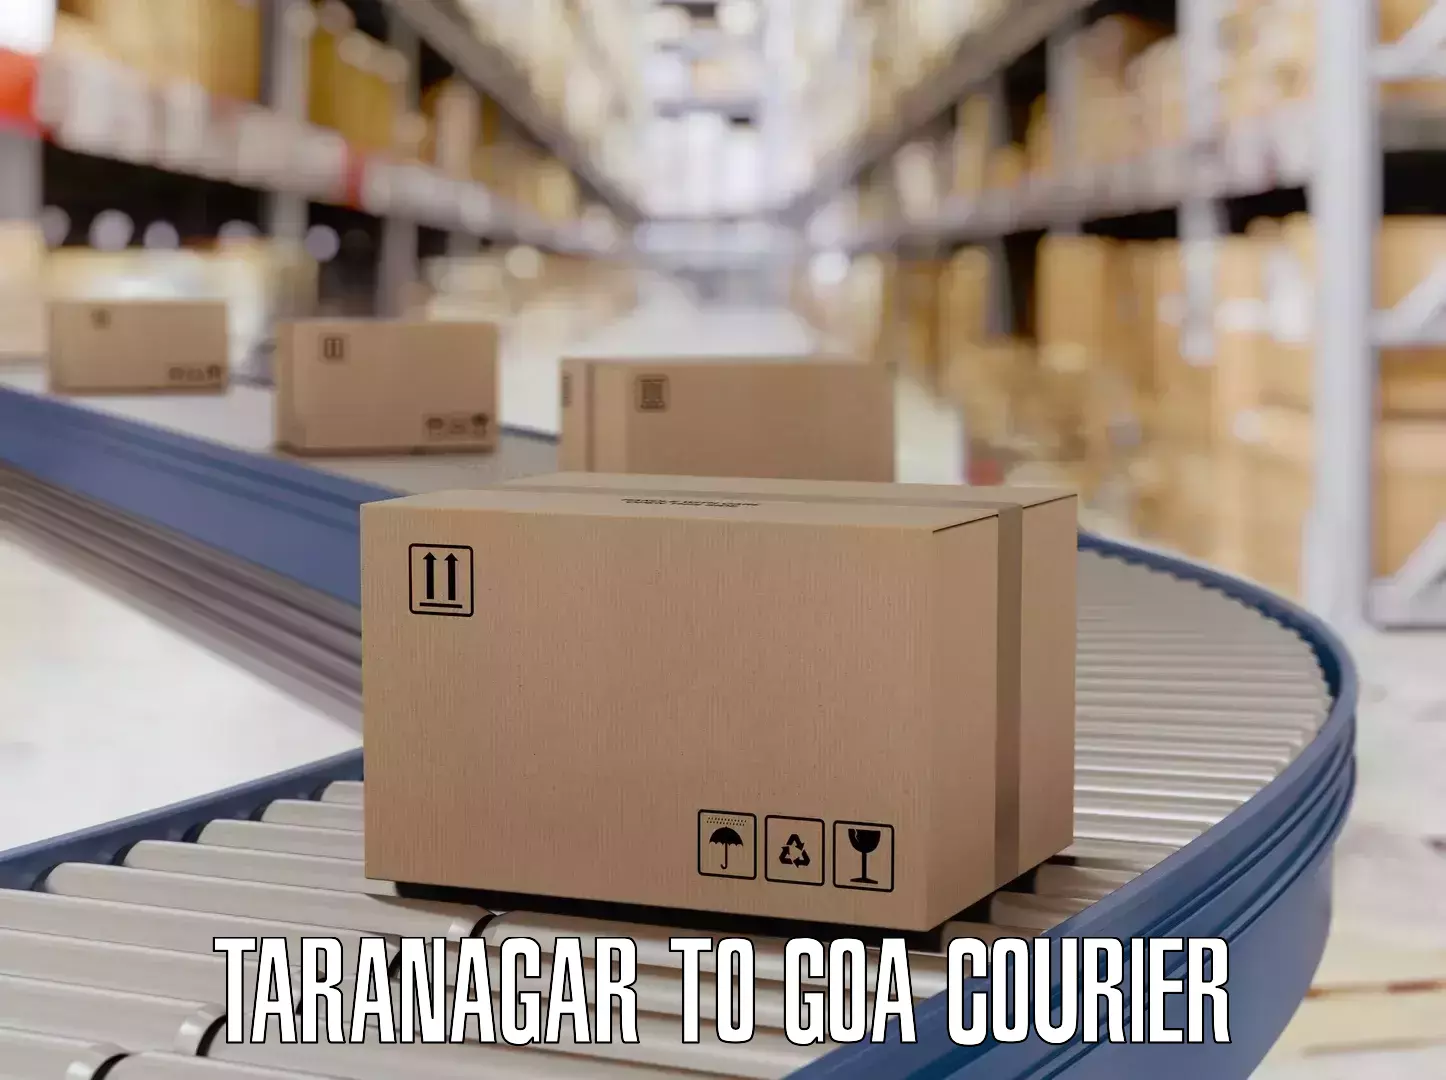 Luggage delivery system Taranagar to NIT Goa